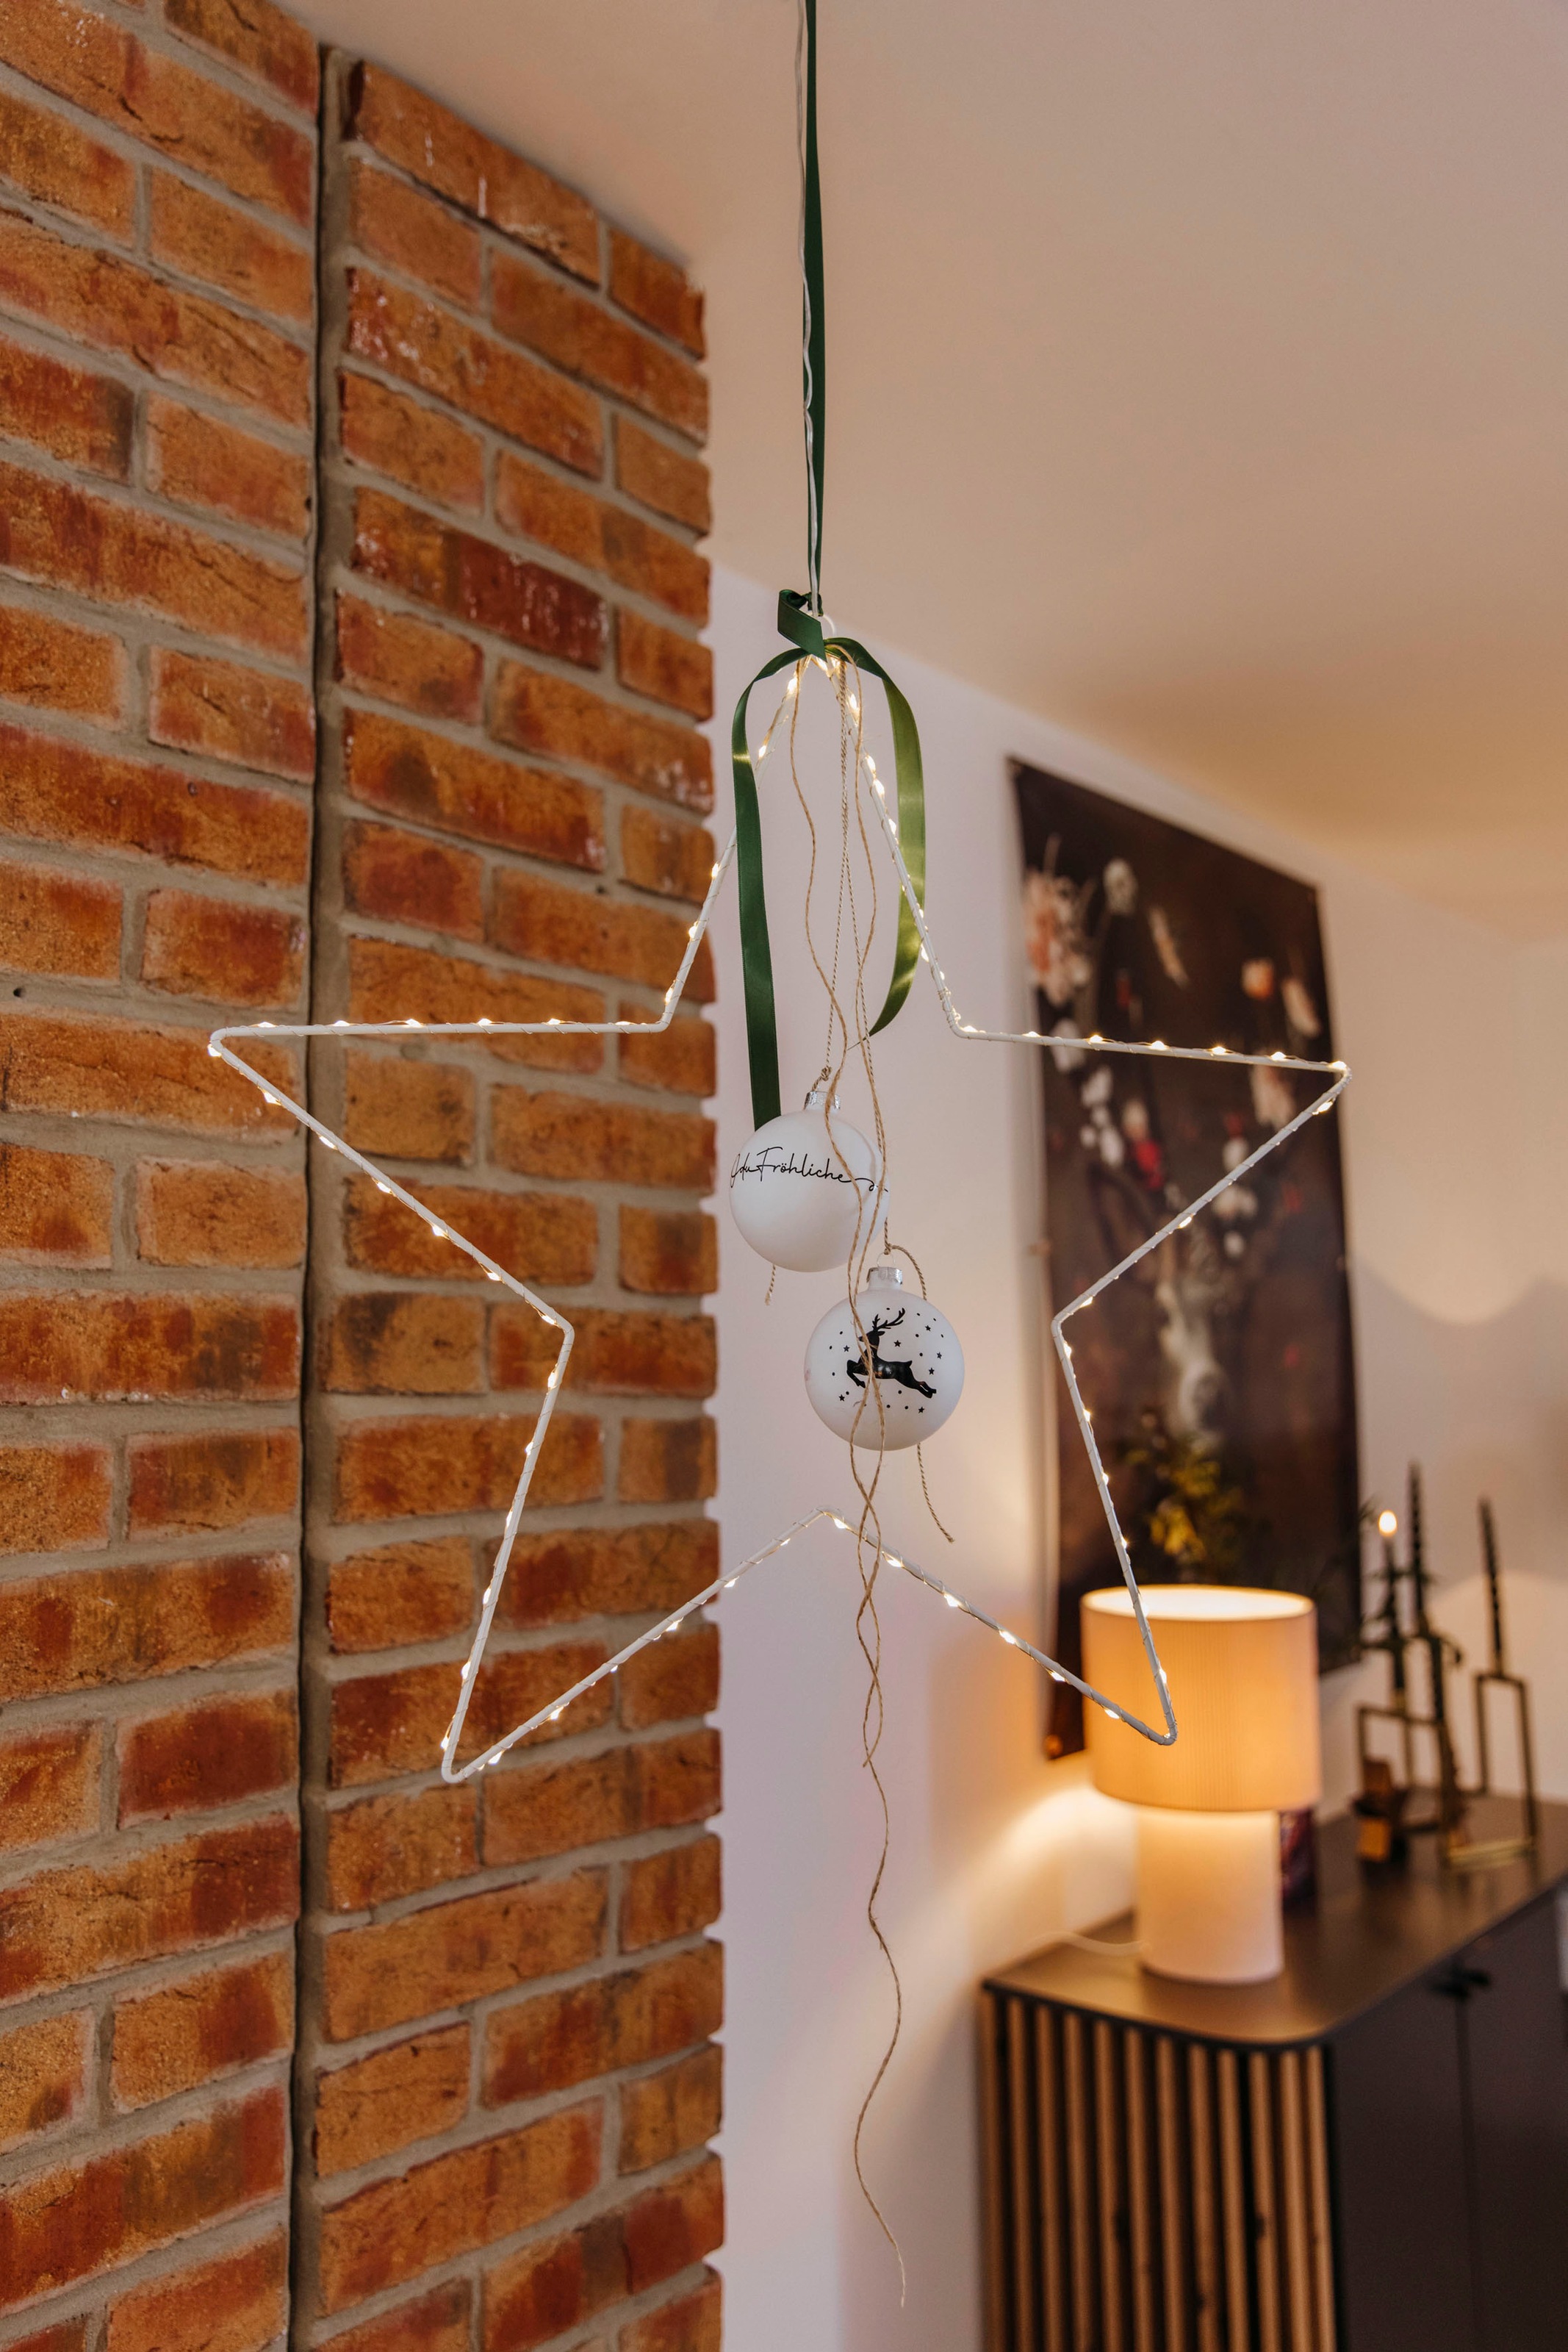 Öse Raten zum kaufen aus LED Draht, Design mit Aufhängen,Weihnachtsdeko AM auf aussen Stern, Weihnachtsstern